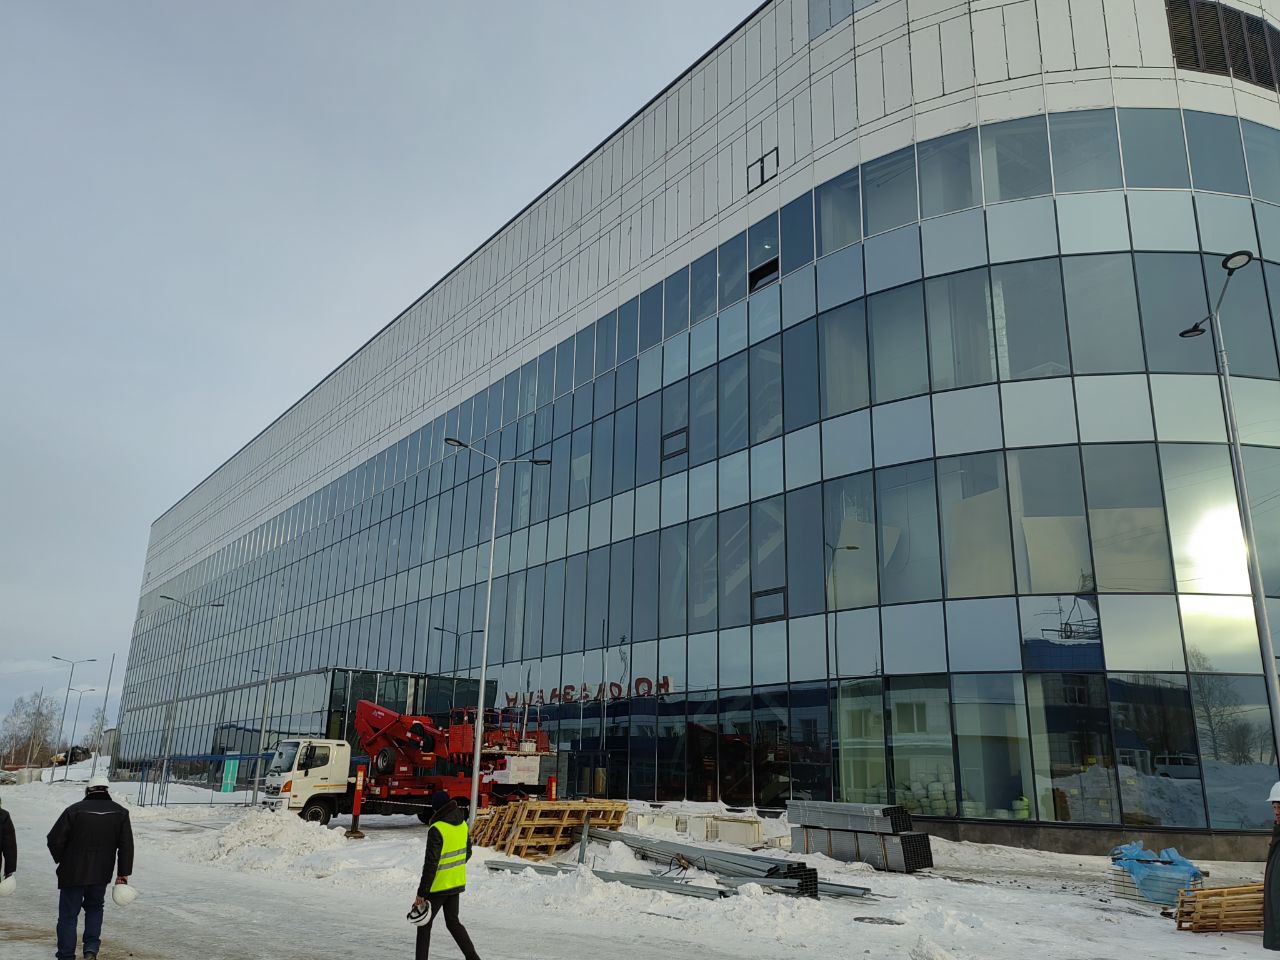 Мэр Новокузнецка: для строительства терминала аэропорта не хватает специалистов